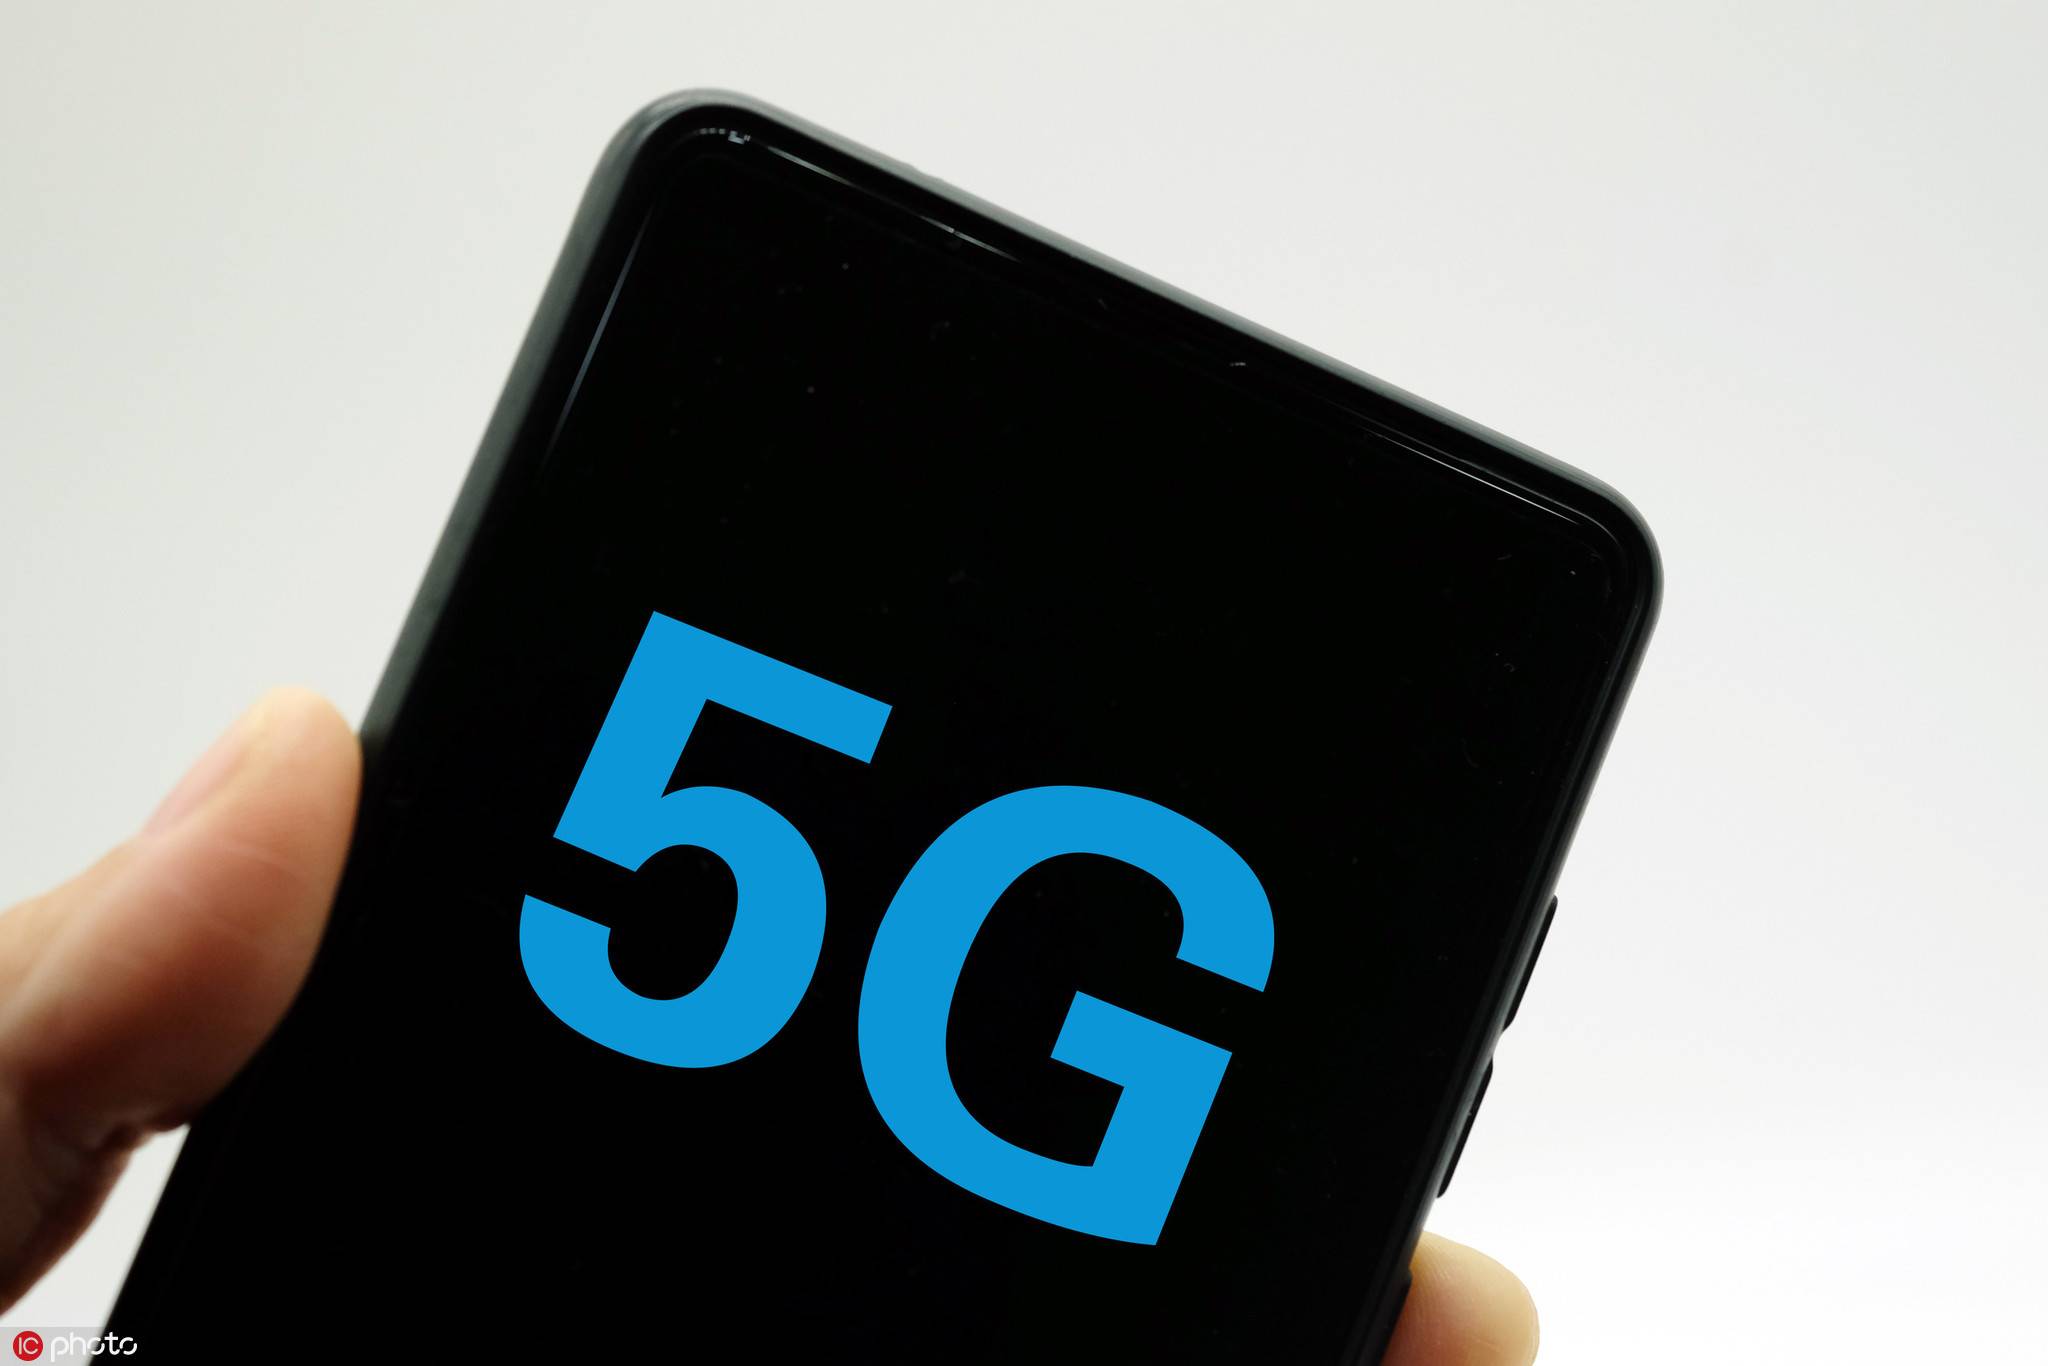 长沙电信 5G 服务未覆盖，手机爱好者期待 网络带来的便利生活  第8张